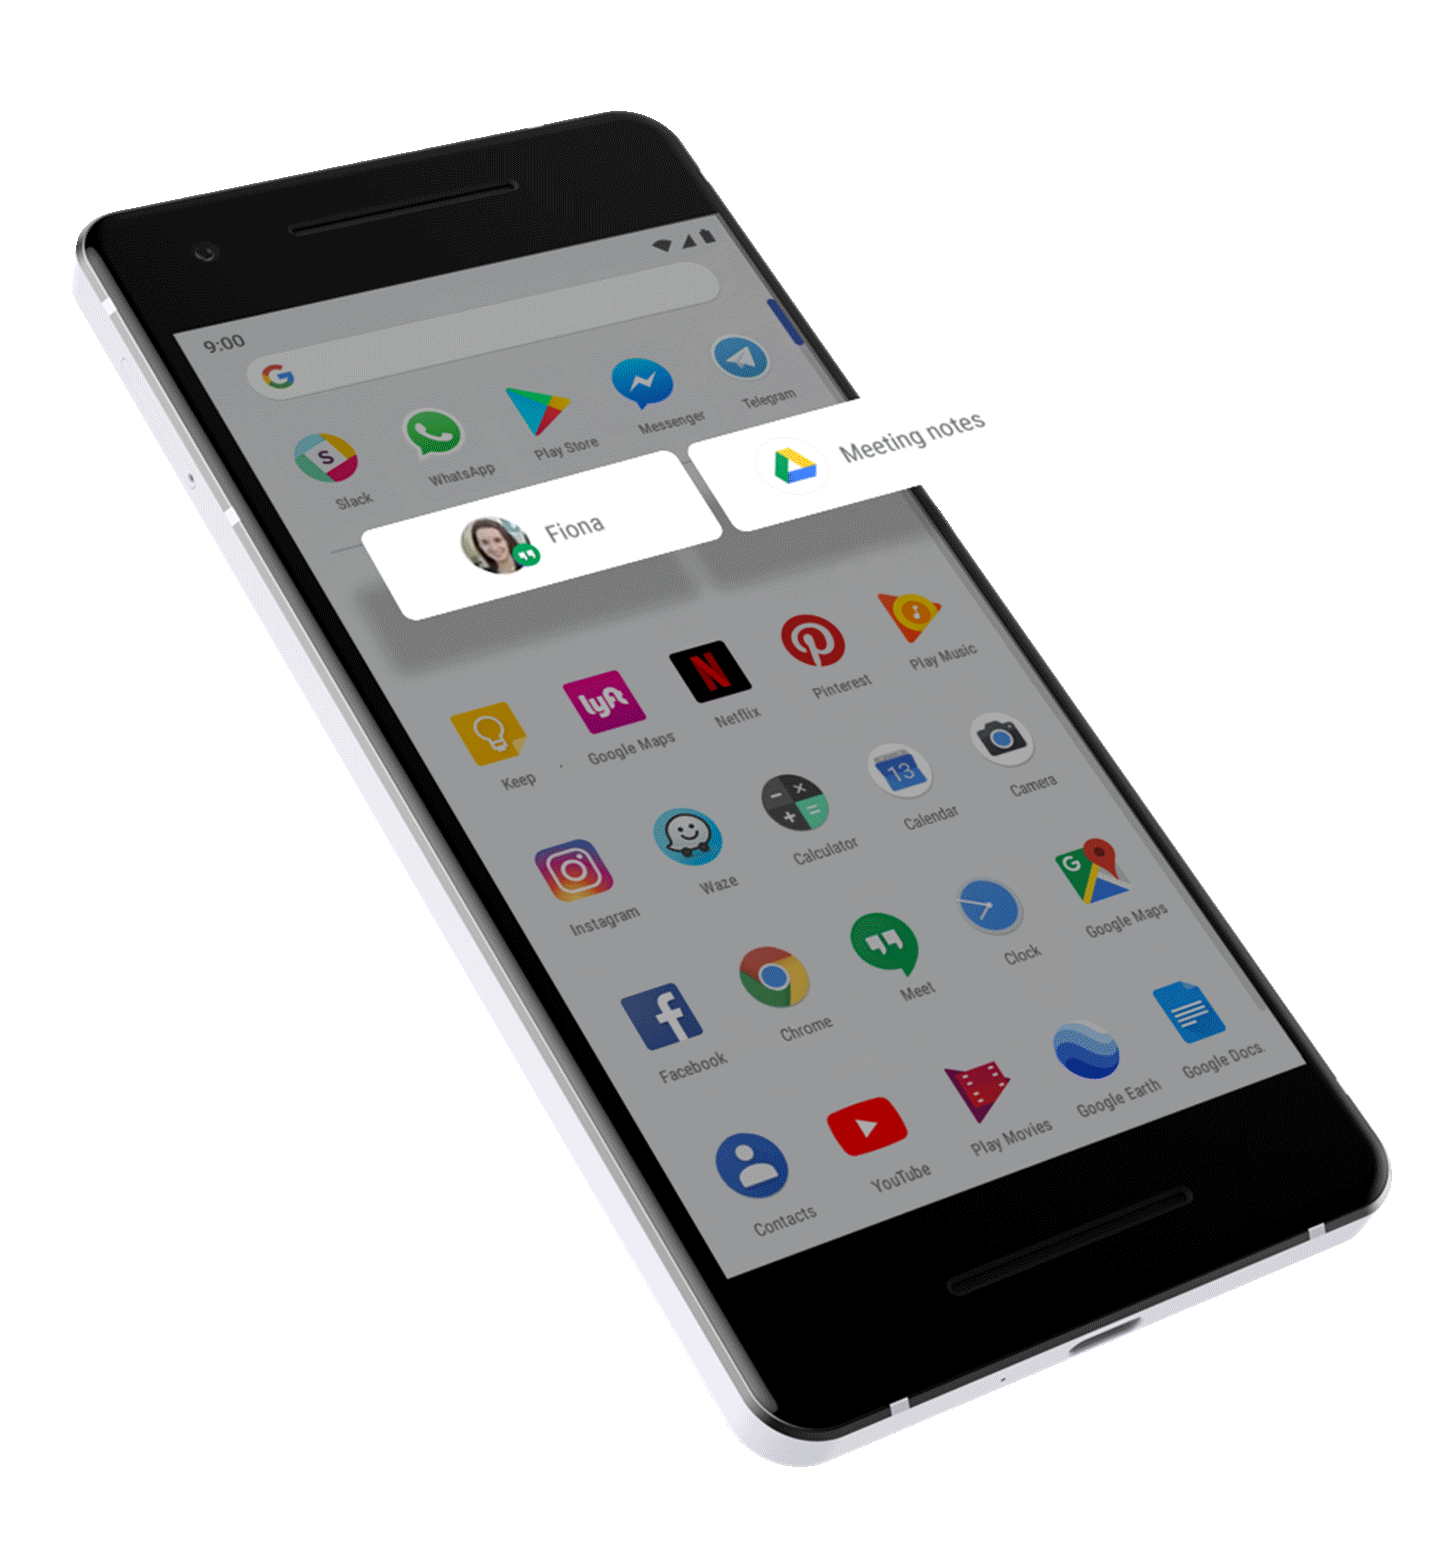 Immagine di uno smartphone con dimostrazione della funzionalità Azioni delle App.